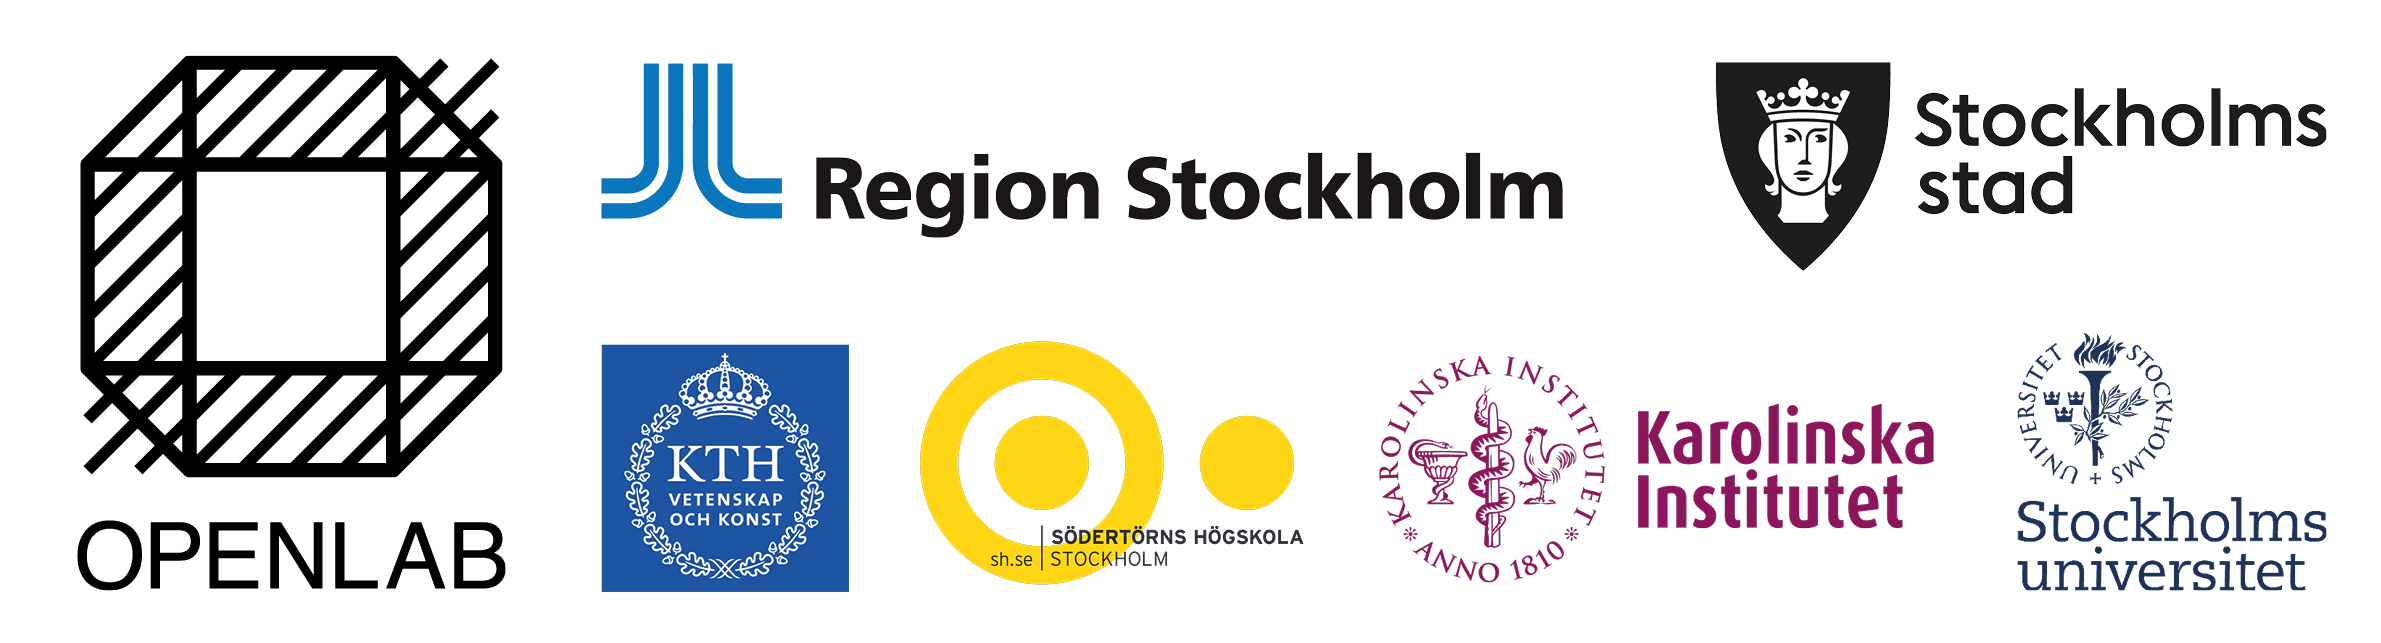 Openlab har 6 huvudpartners: Region Stockholm, Stockholms stad, KTH, Södertörns högskola, Karolinska Institutet och Stockholm universitet.